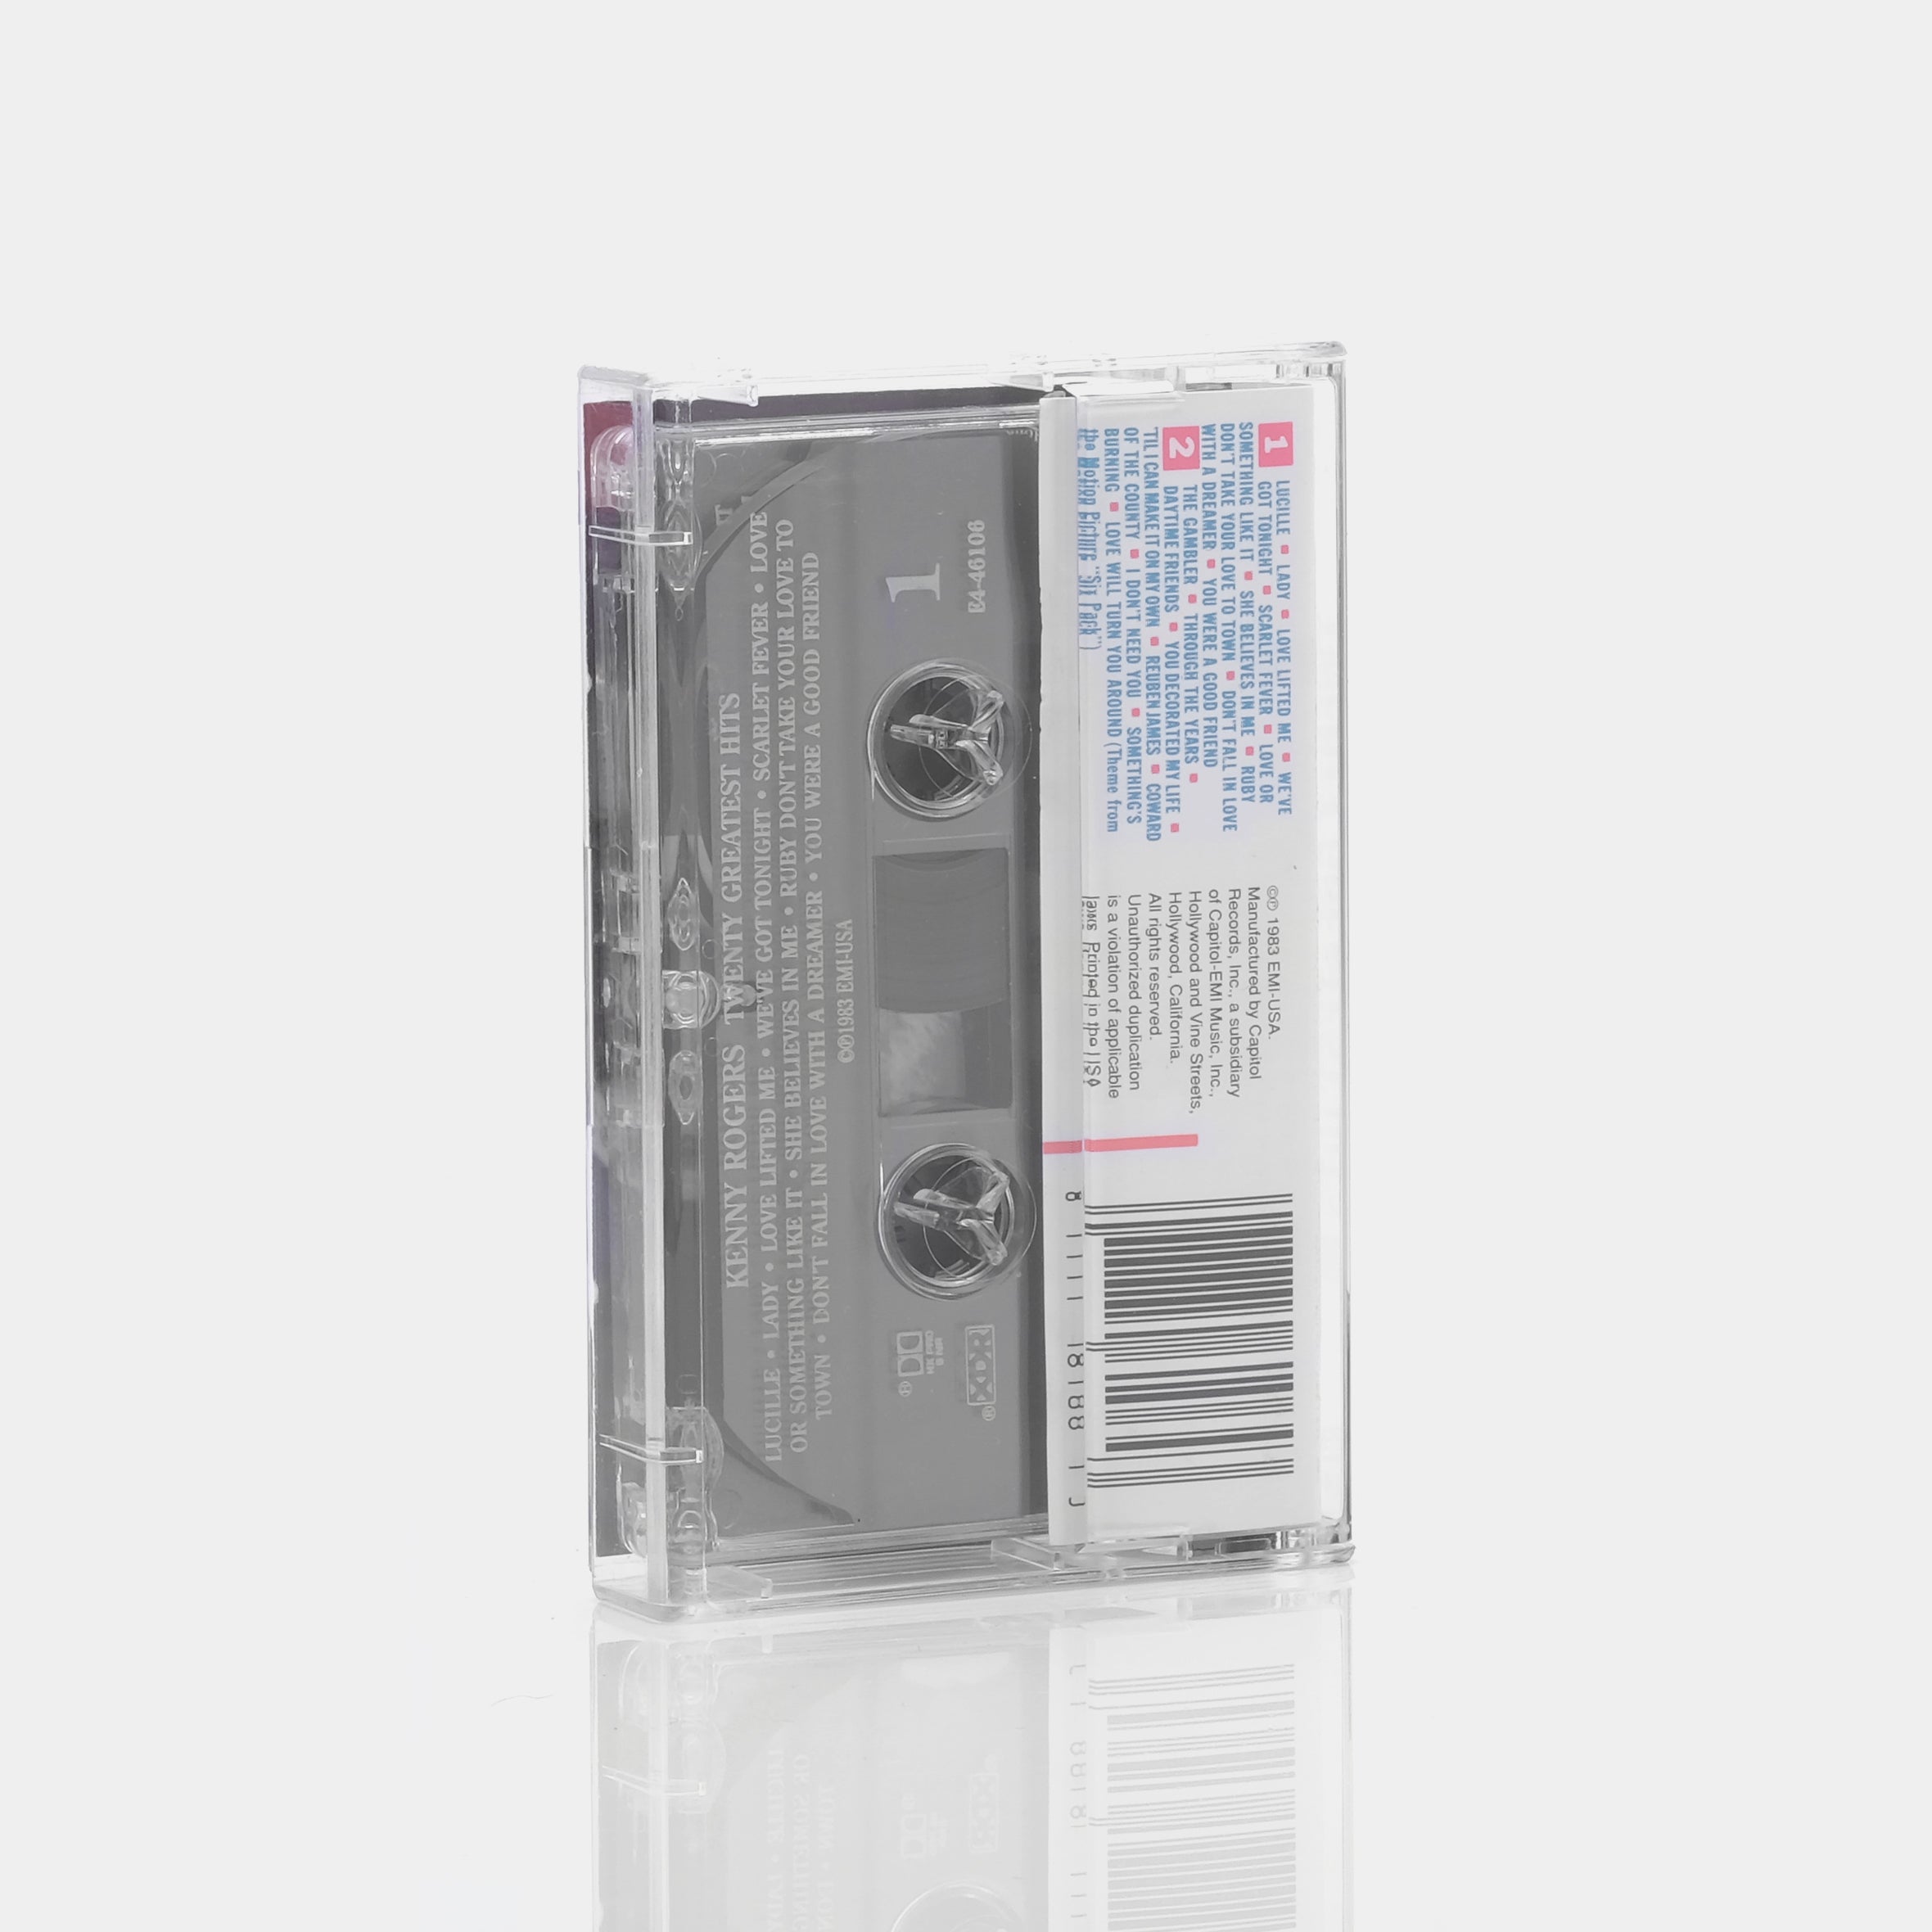 Kenny Rogers - Twenty Greatest Hits Cassette Tape